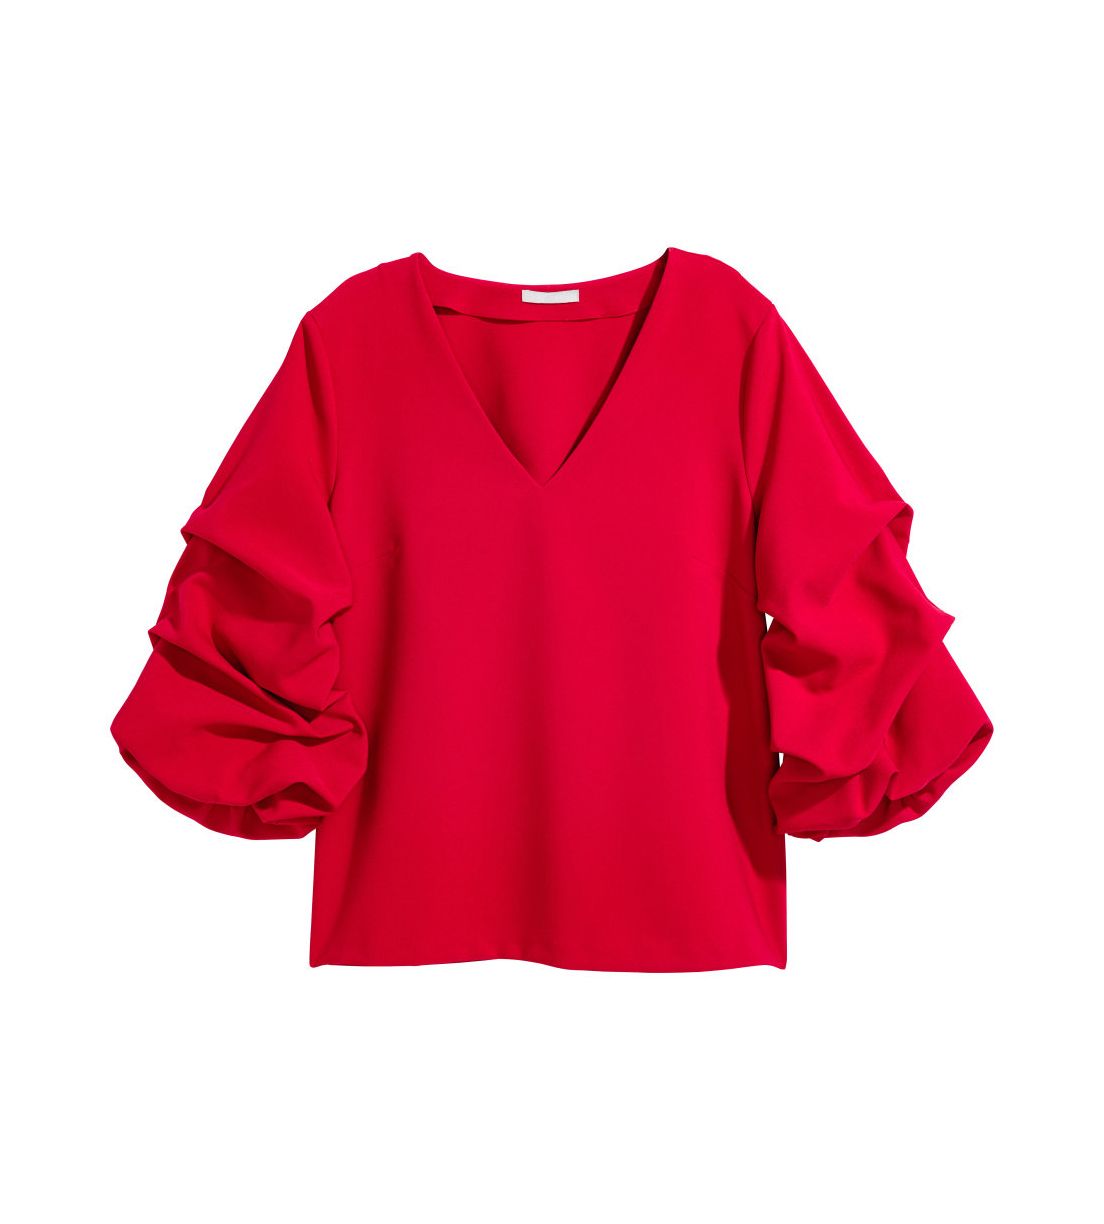 H&M tops ar drapētām piedurknēm sarkanā krāsā